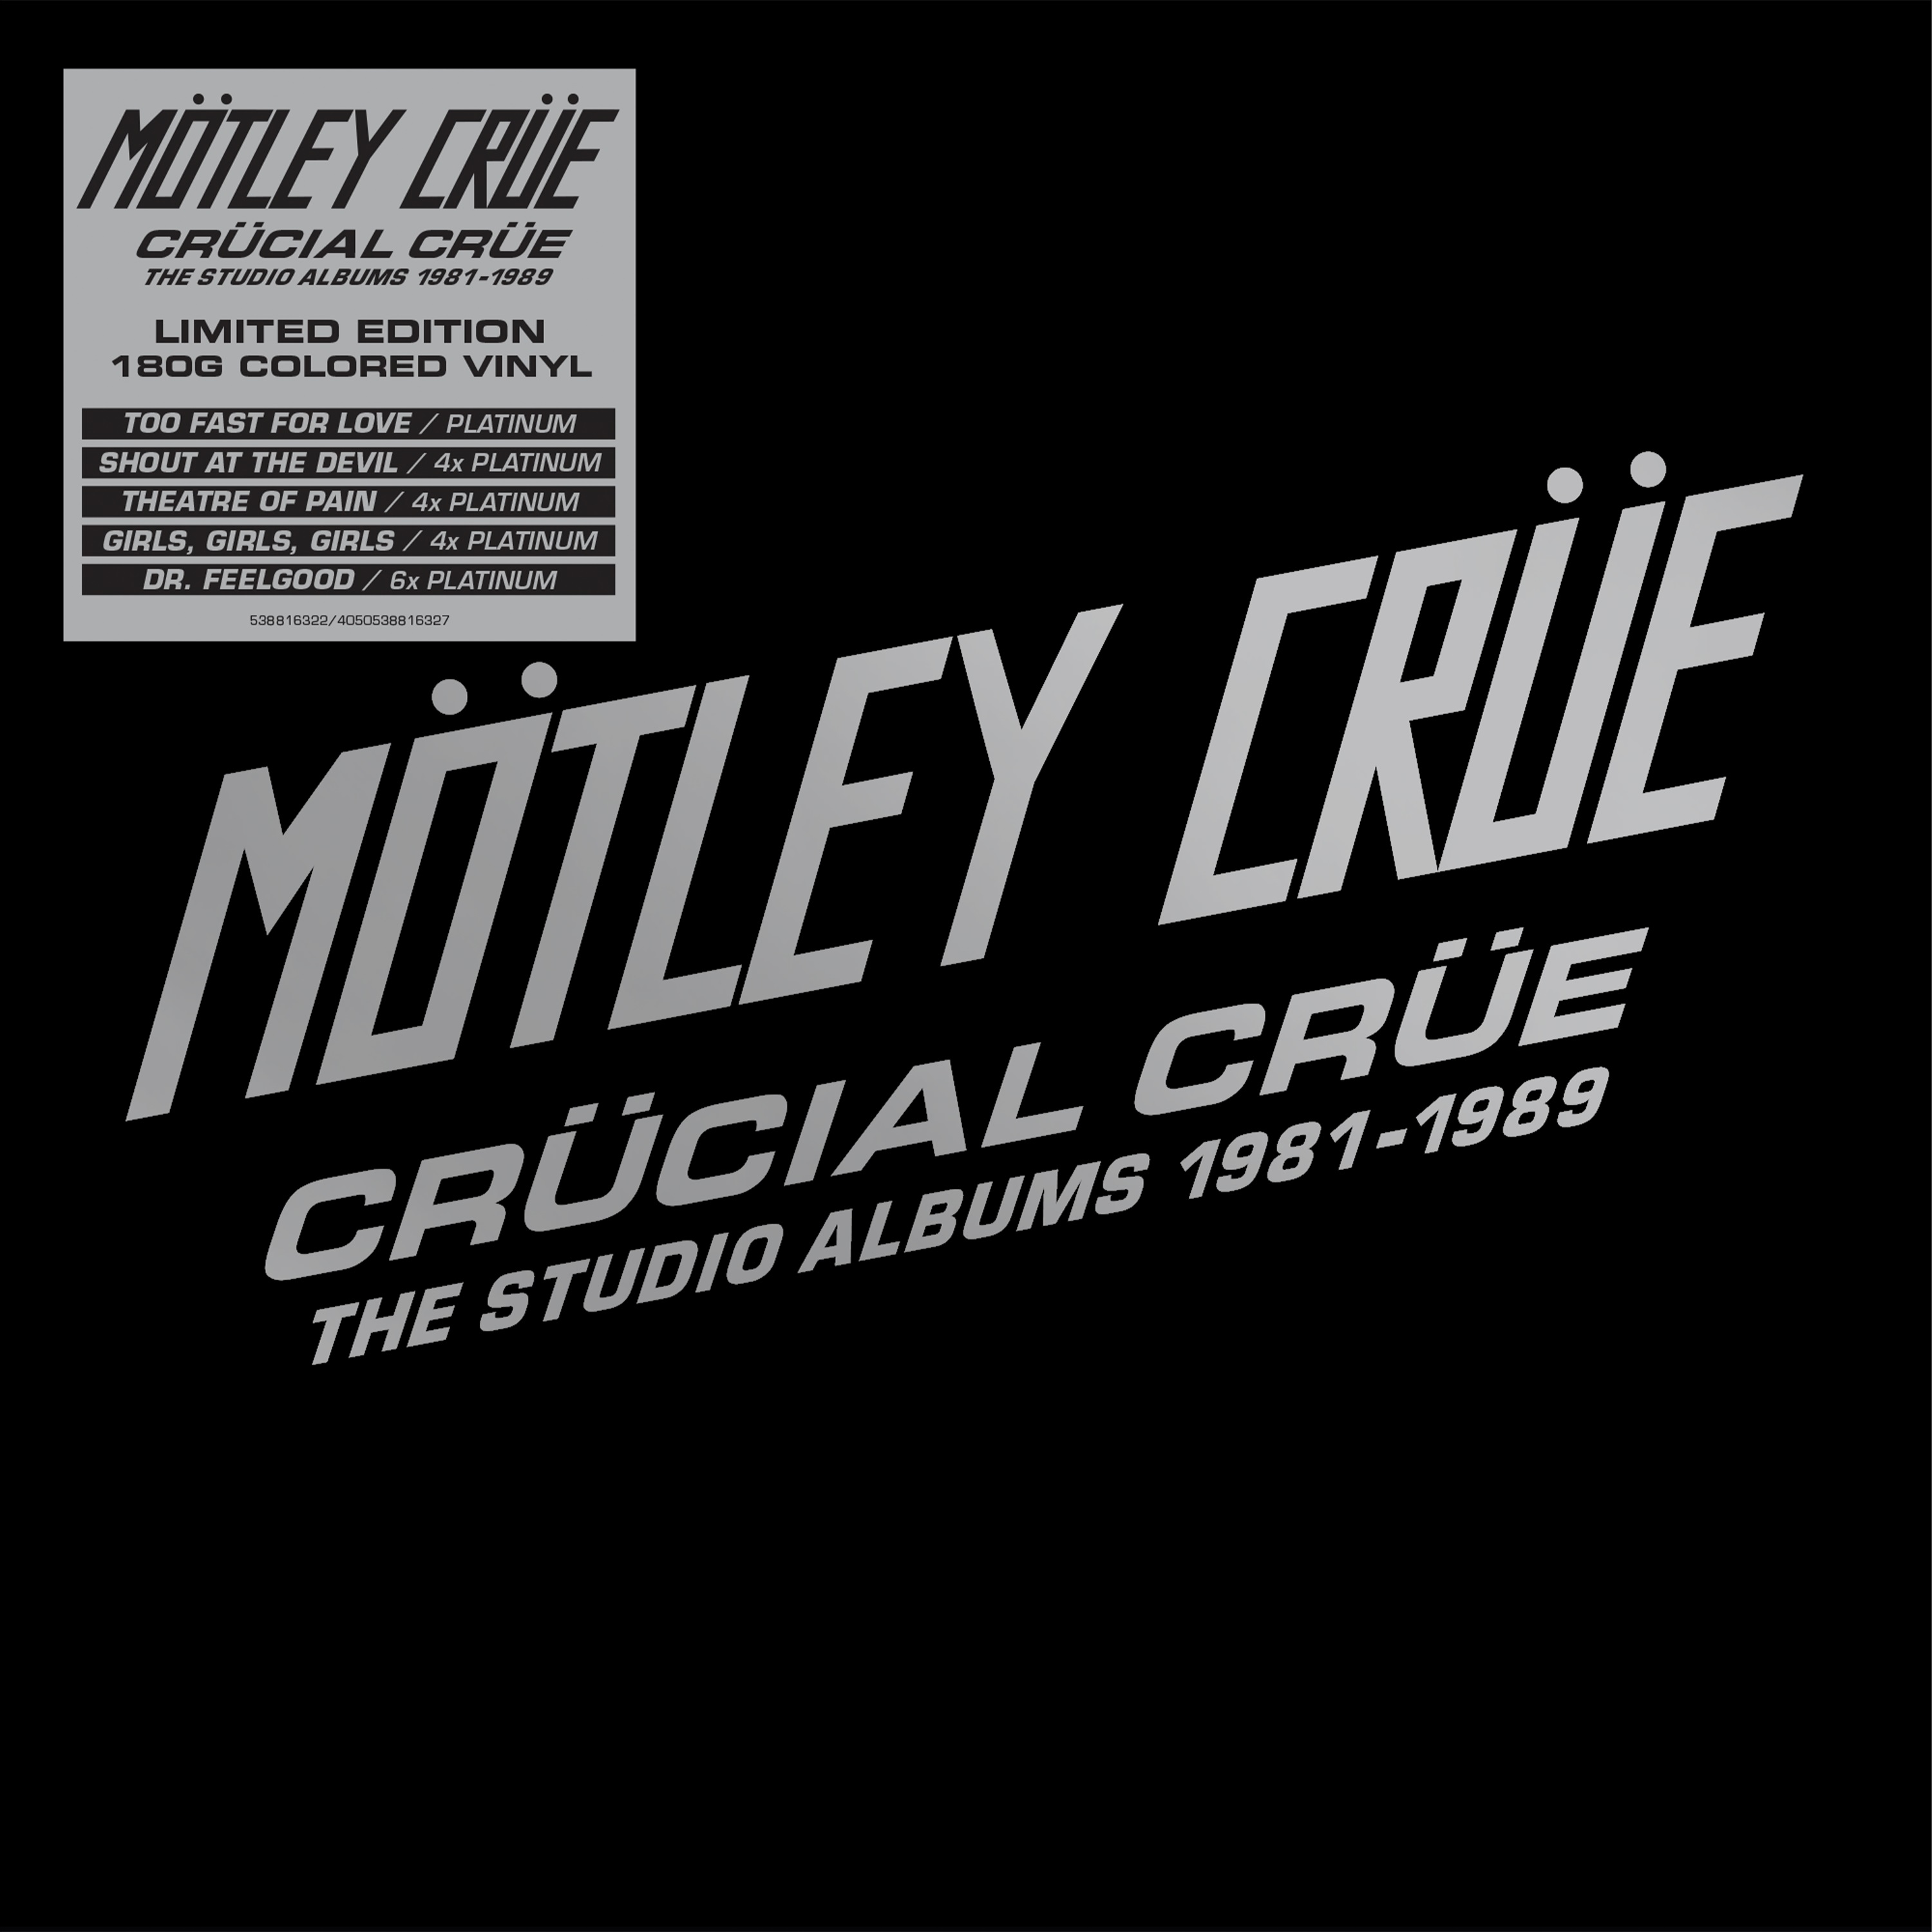 Motley Crue - Crucial Crue The Studio Albums 1981-1989 - (Vinyl LP, CD ...